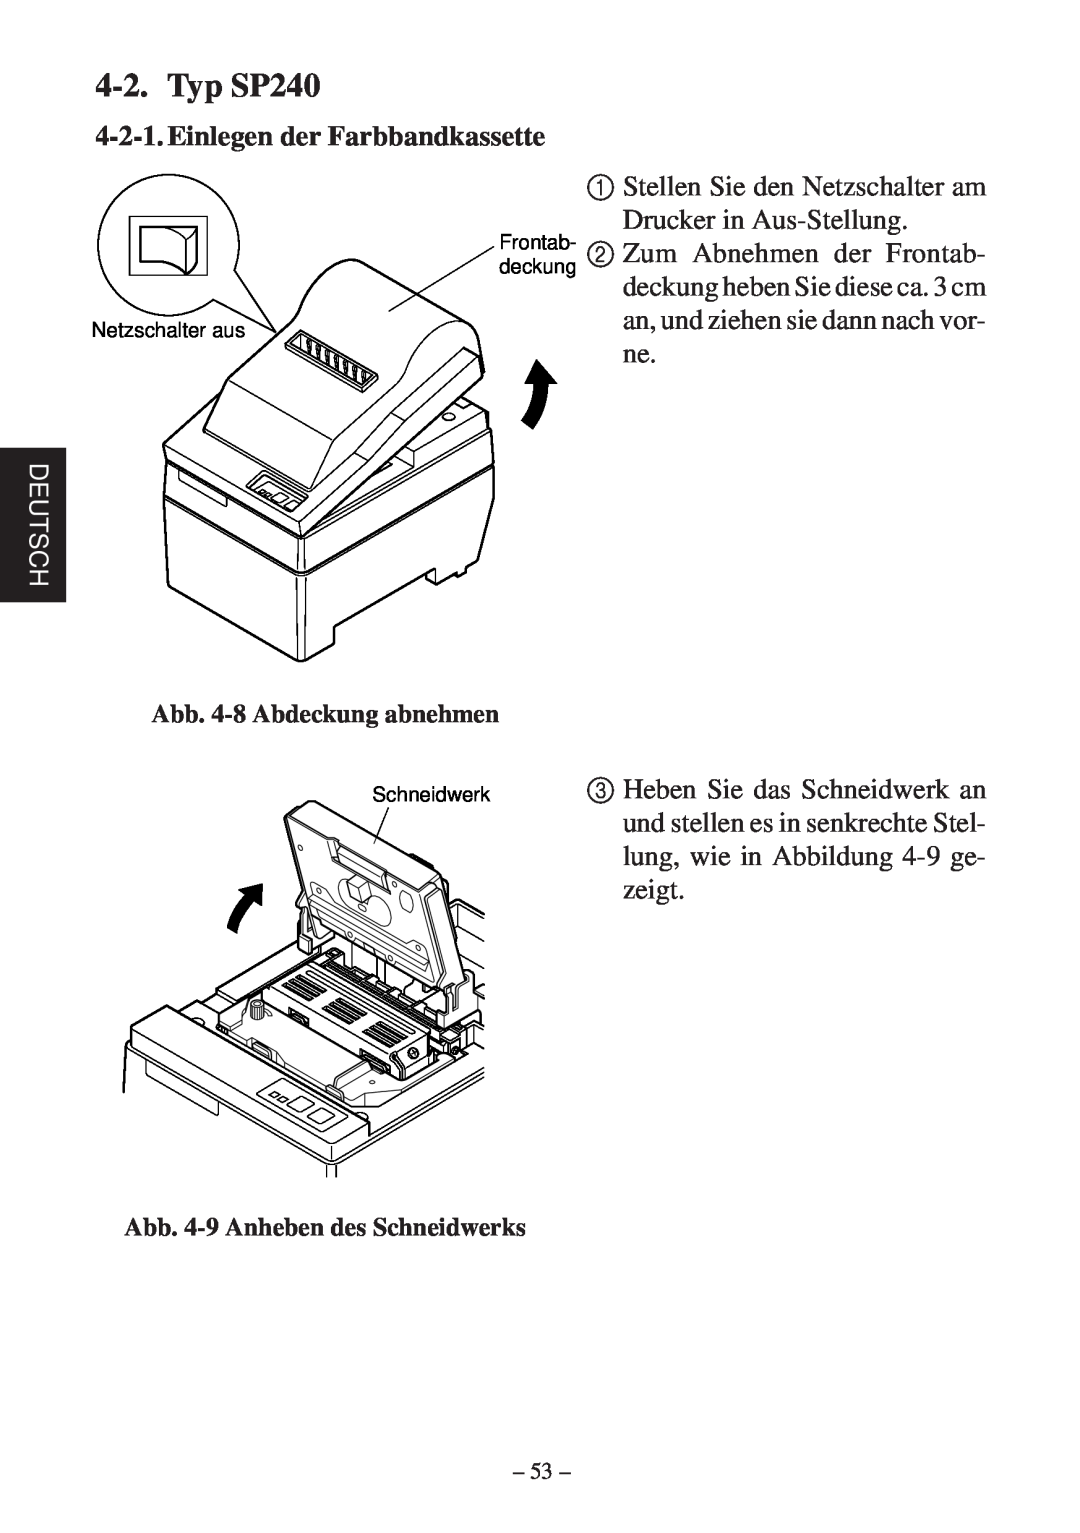 Star Micronics SP200F user manual Typ SP240, Einlegen der Farbbandkassette, Deutsch, Abb. 4-8 Abdeckung abnehmen 